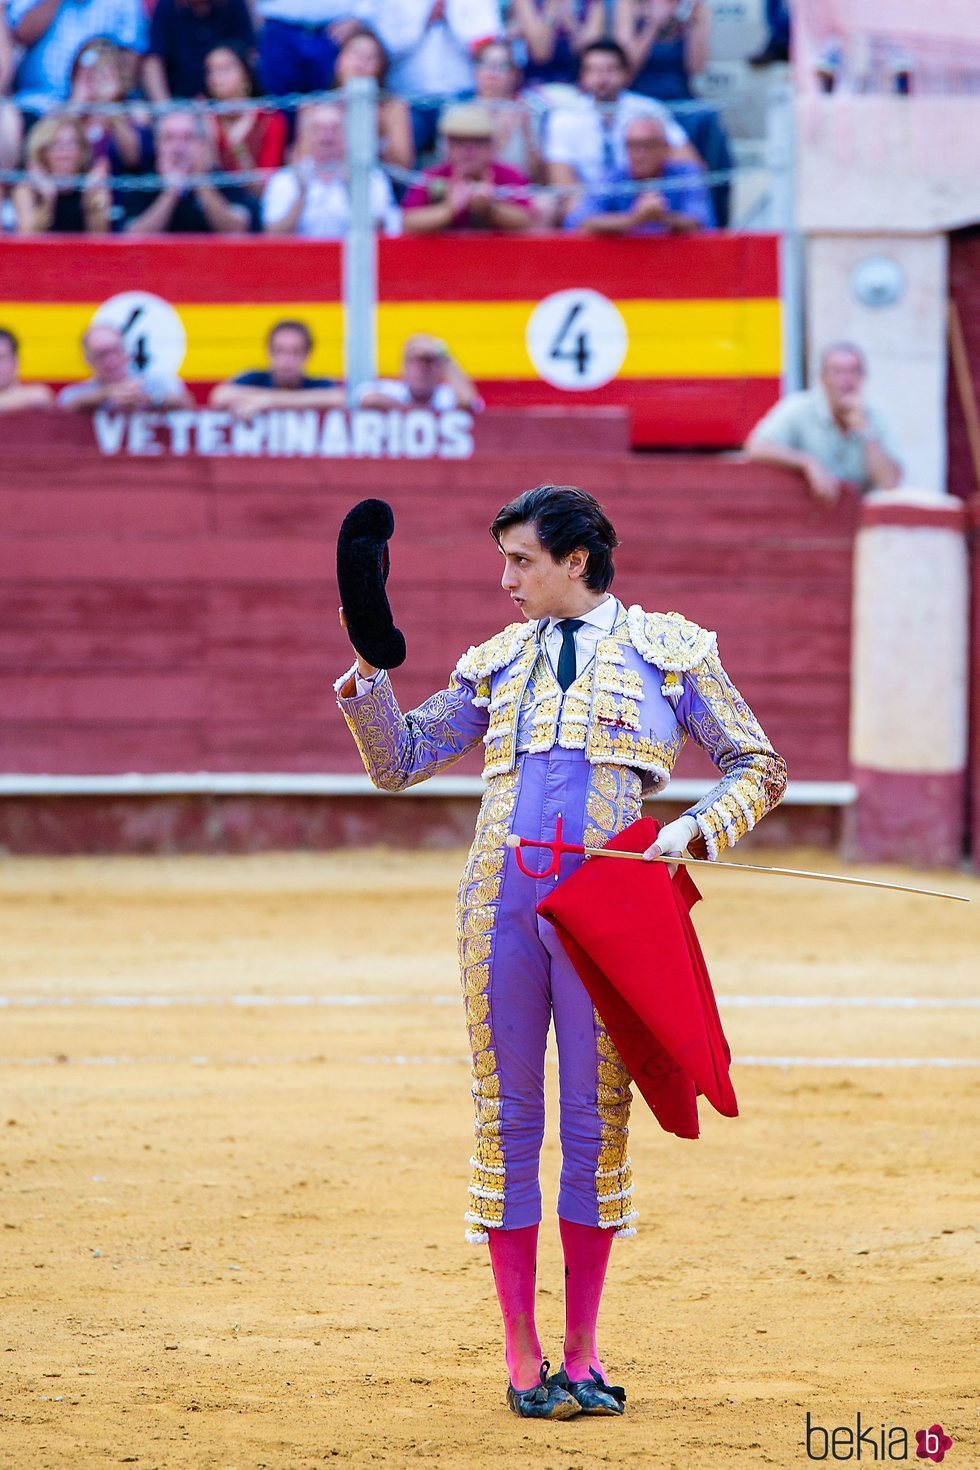 Roca Rey brindando uno de sus toros en la Feria de Almería 2018